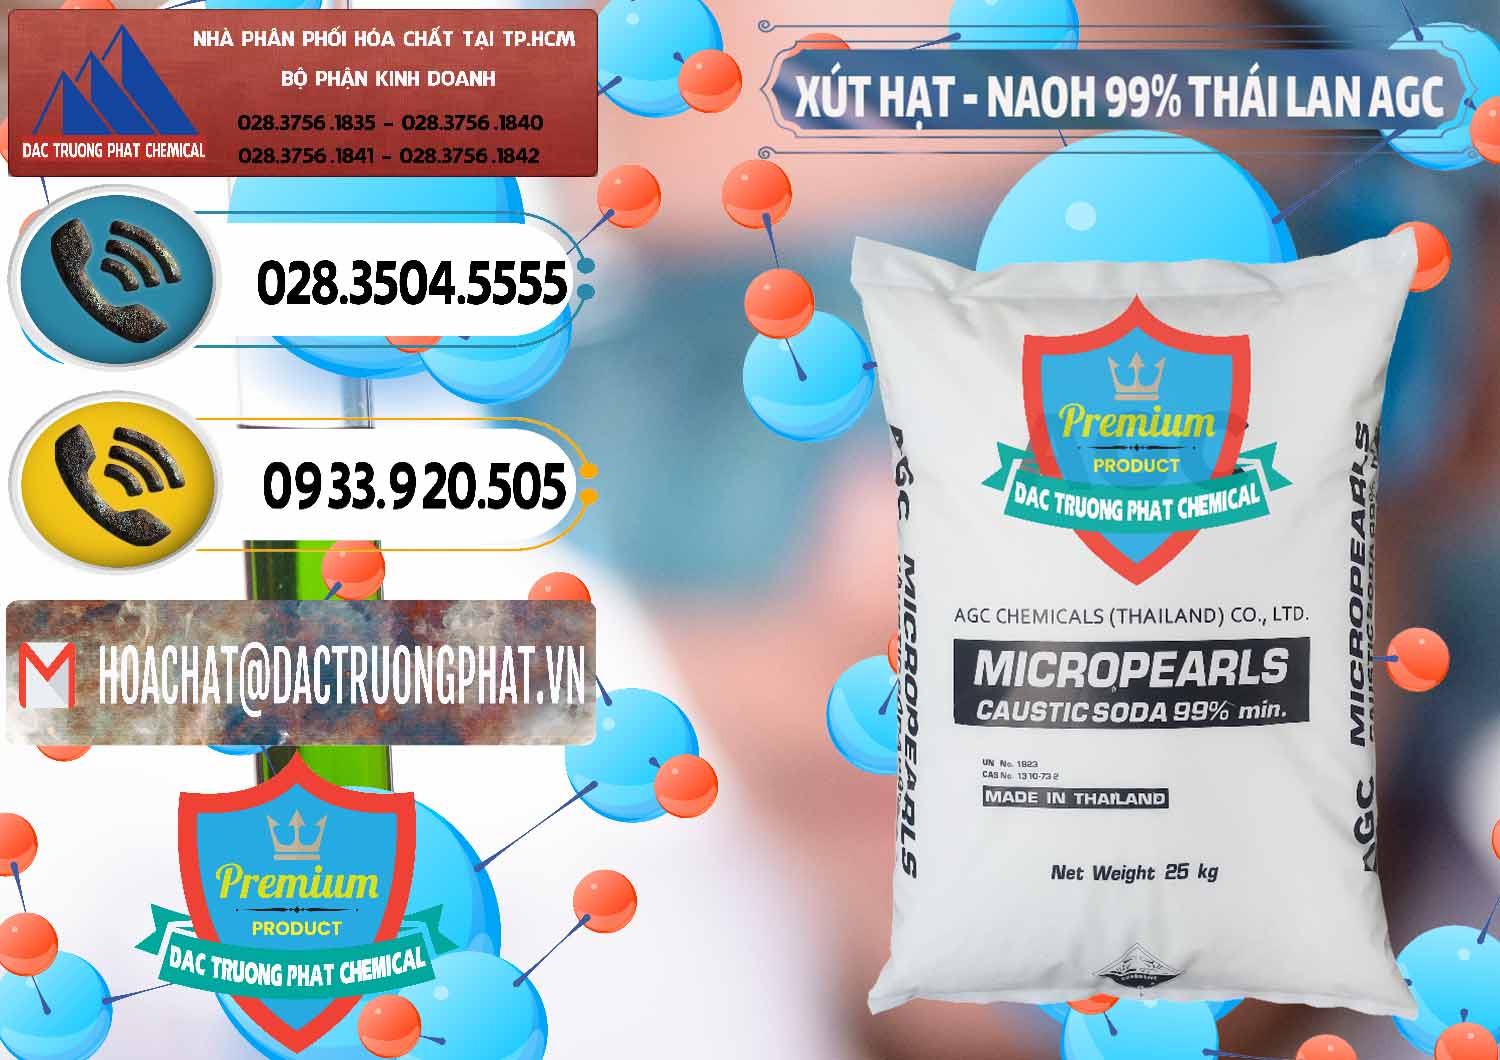 Công ty kinh doanh ( bán ) Xút Hạt - NaOH Bột 99% AGC Thái Lan - 0168 - Công ty kinh doanh - phân phối hóa chất tại TP.HCM - hoachatdetnhuom.vn